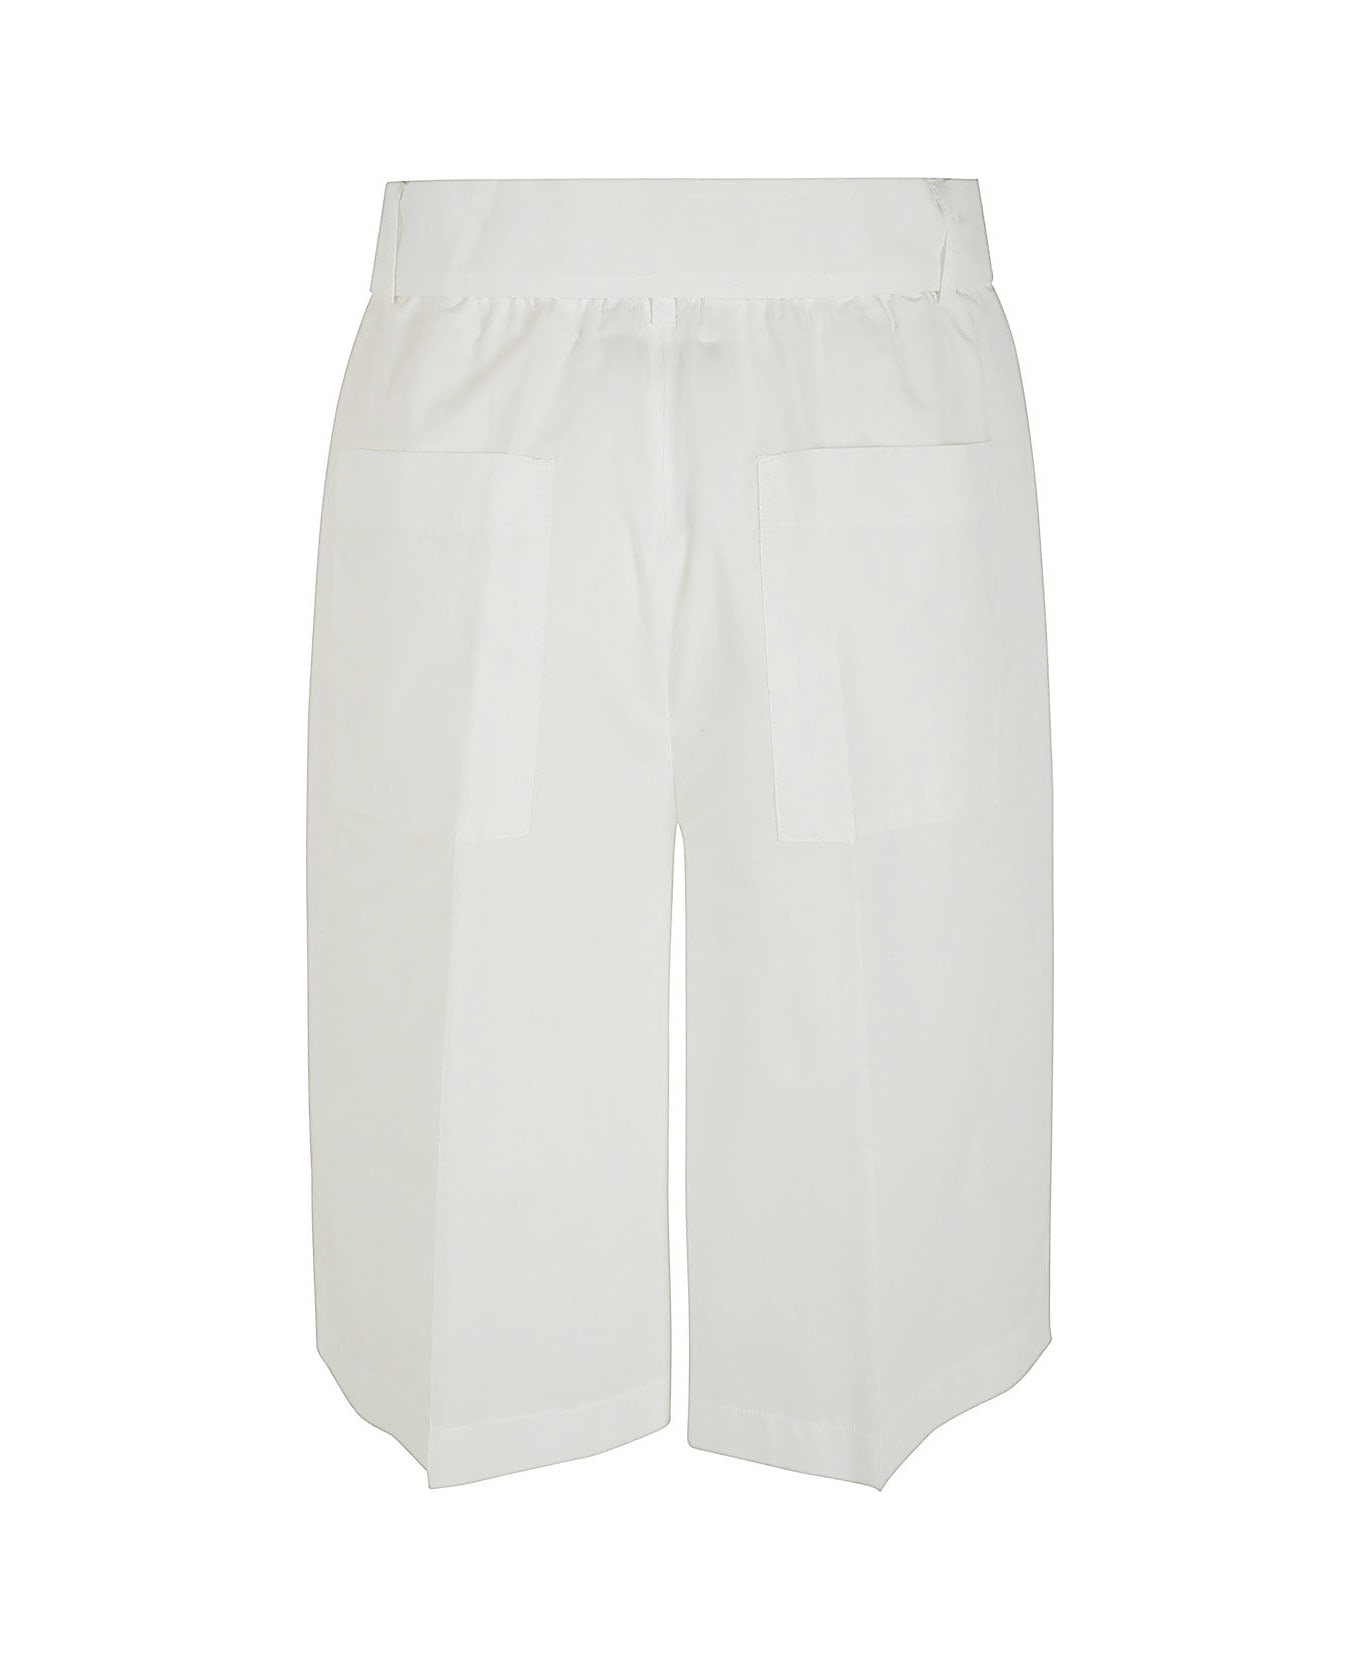 Seventy Shorts - White ショートパンツ